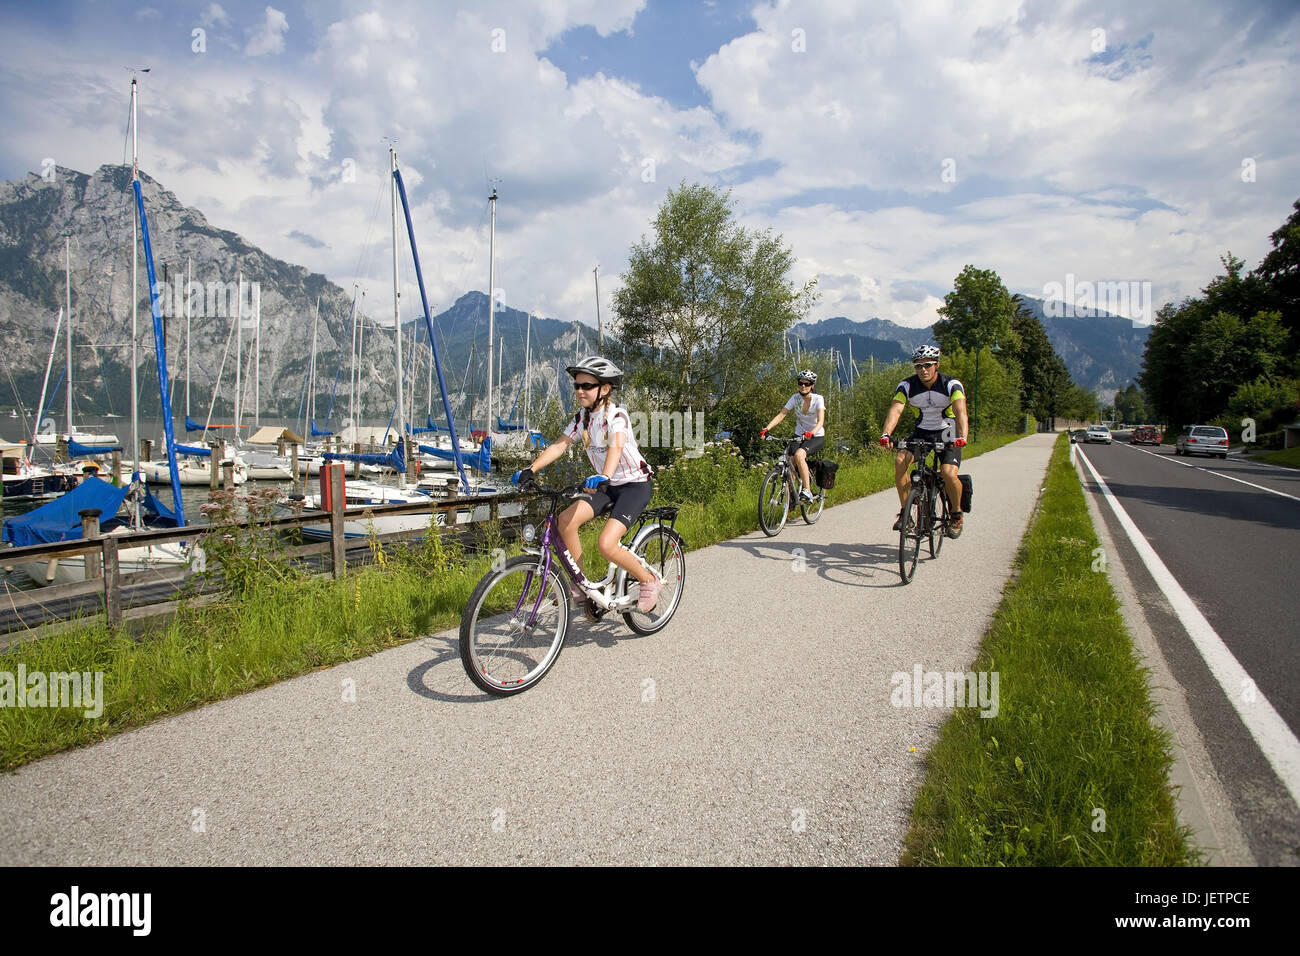 Excursion familiale dans les montagnes par la location, Familienausflug im Gebirge mit dem Fahrrad Banque D'Images